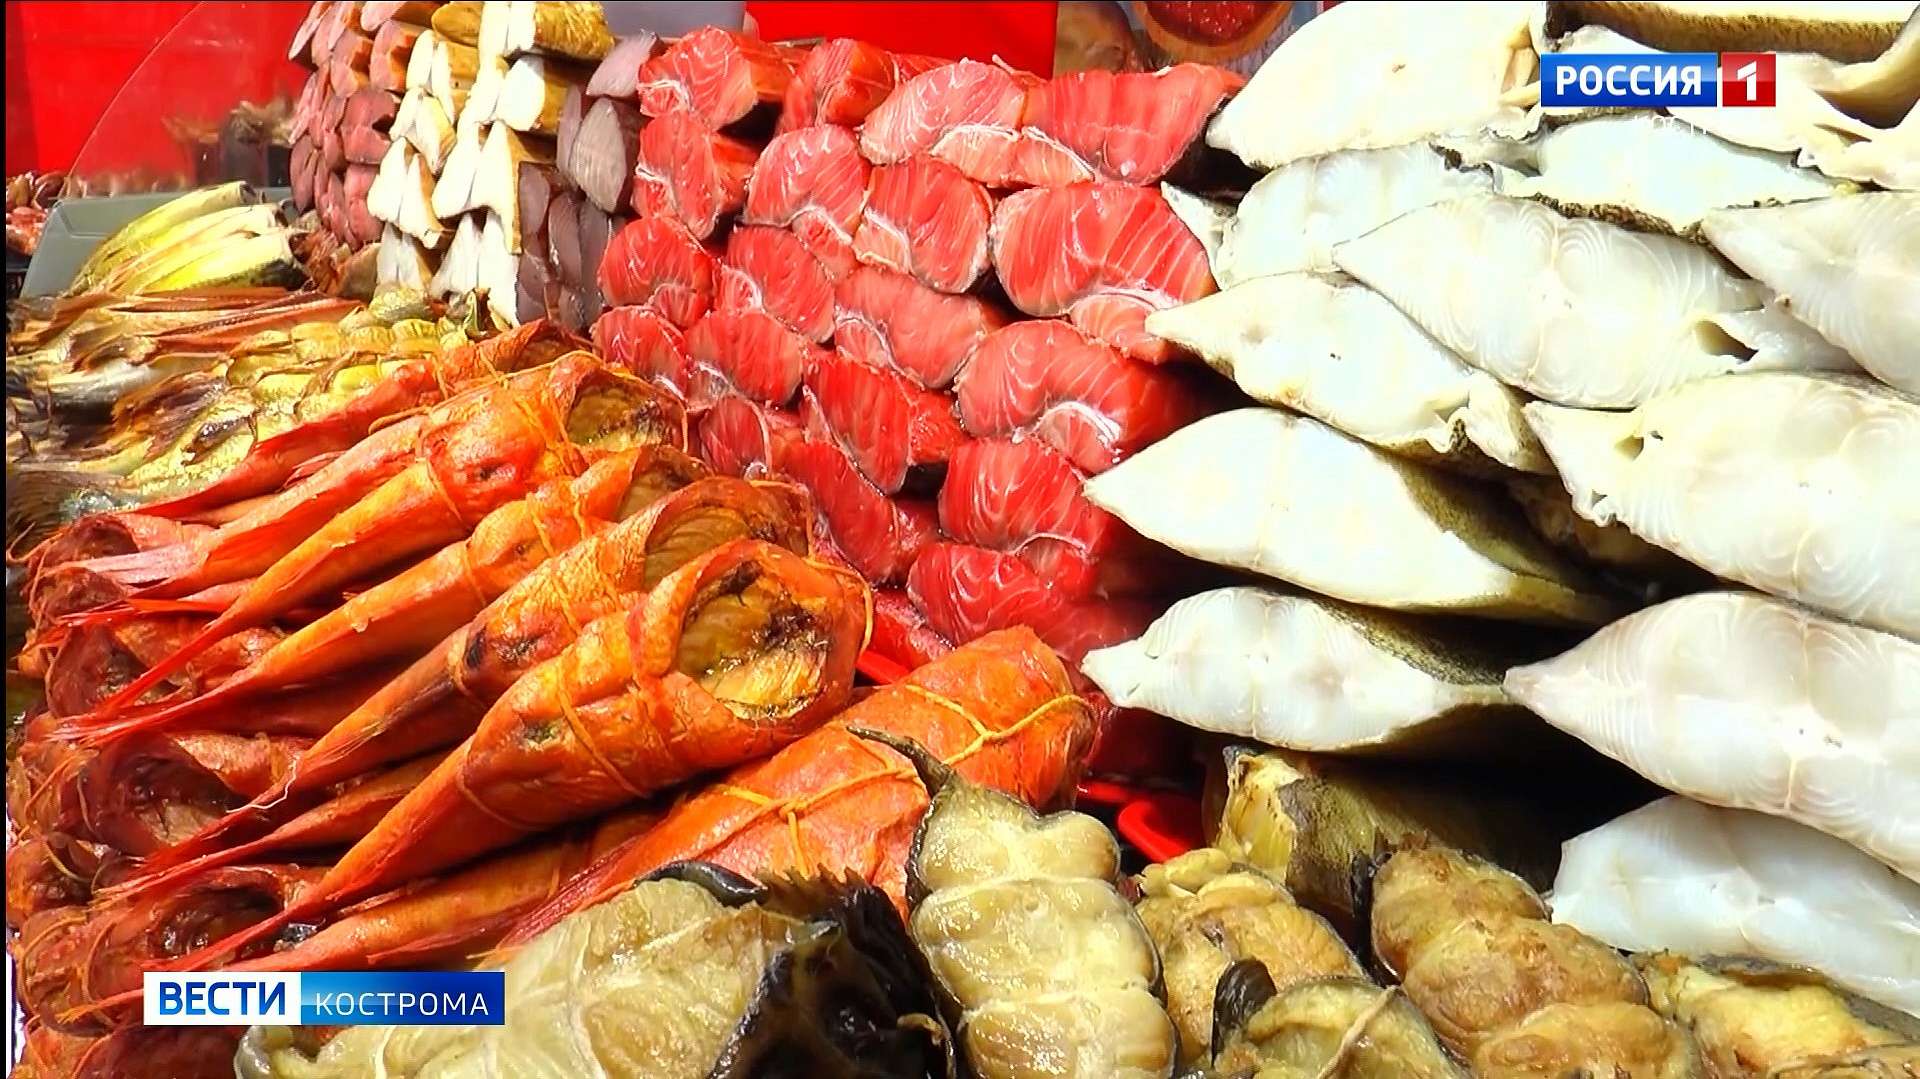 В Кострому вновь приехала ярмарка рыбных деликатесов